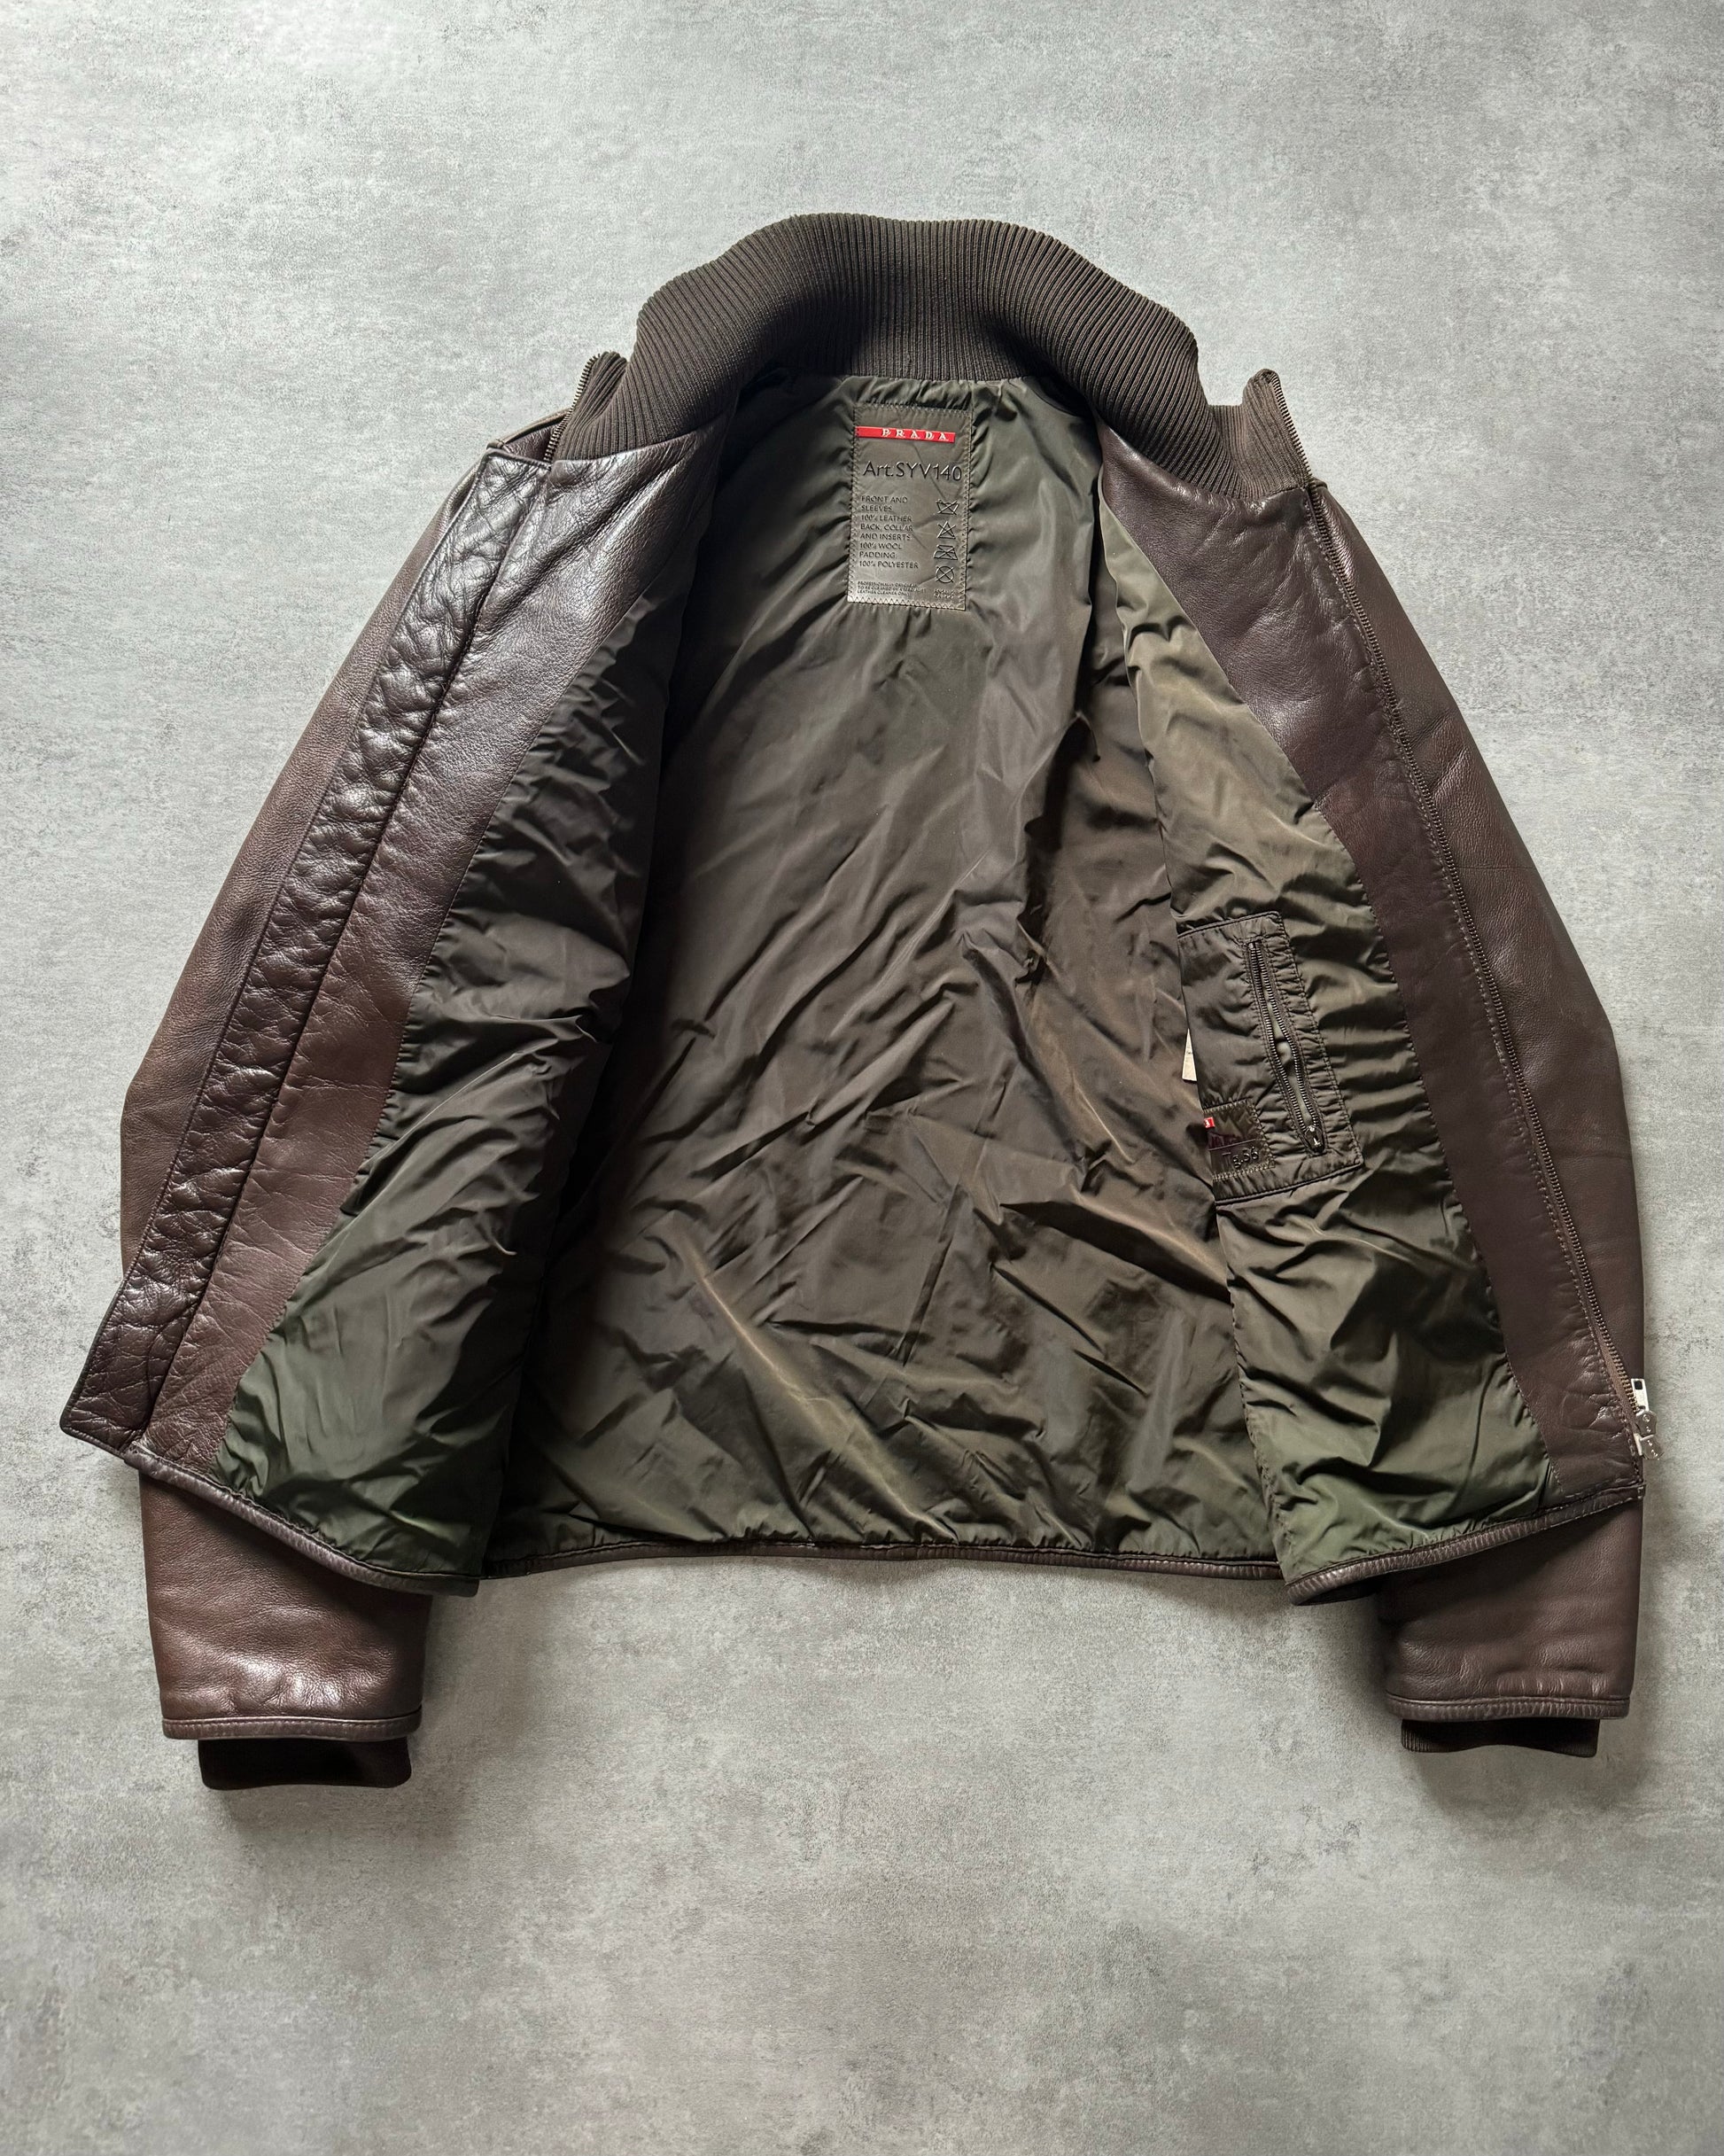 AW2007 Prada Hybride Italian Leather Jacket (L) - 6